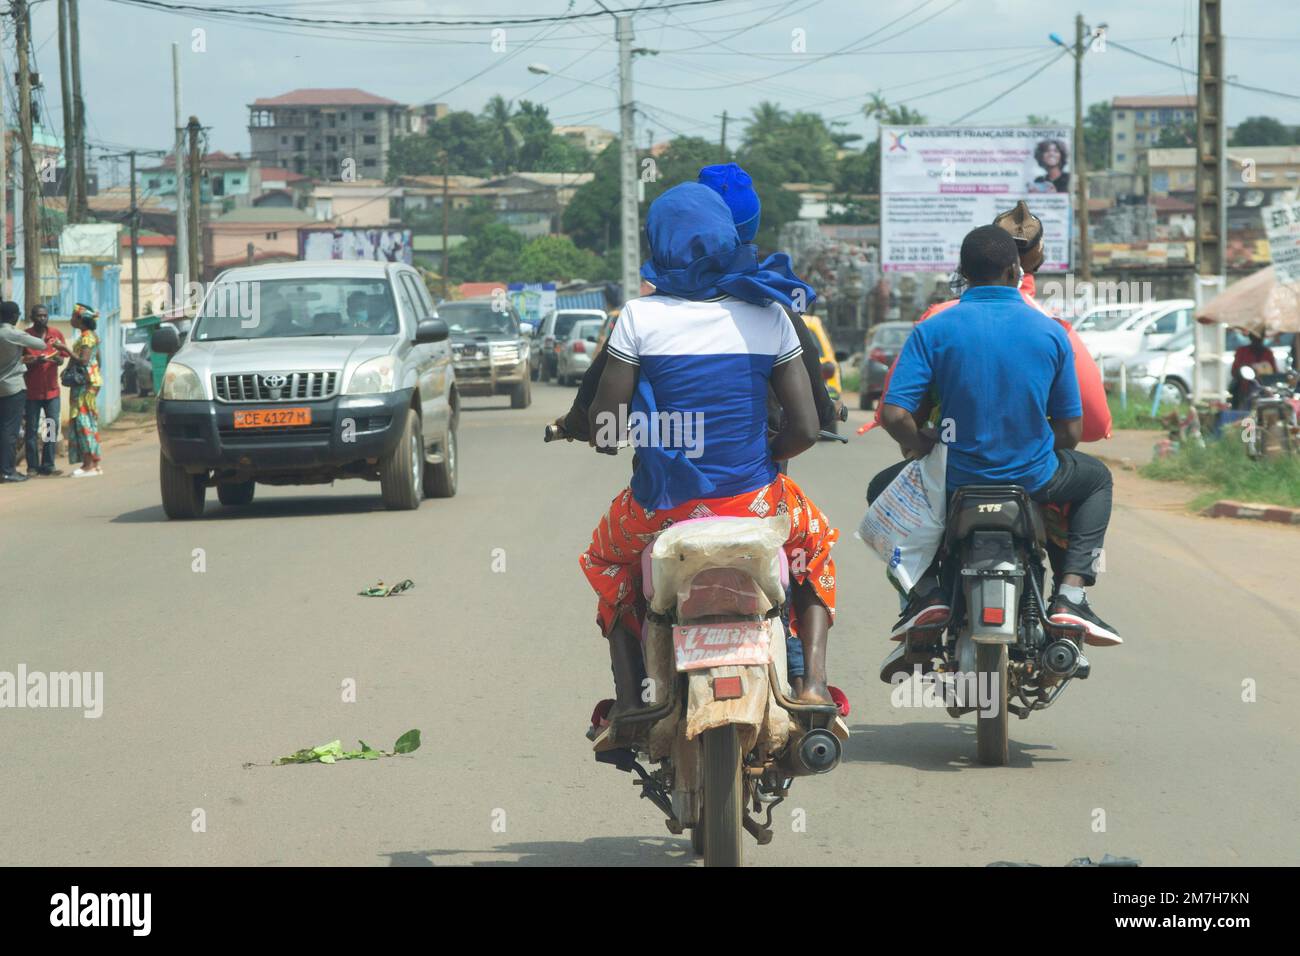 Des taxis moto ou moto-taxi vus de l'arrière, transportant des passagers dans les rues de Yaoundé au Cameroun Banque D'Images